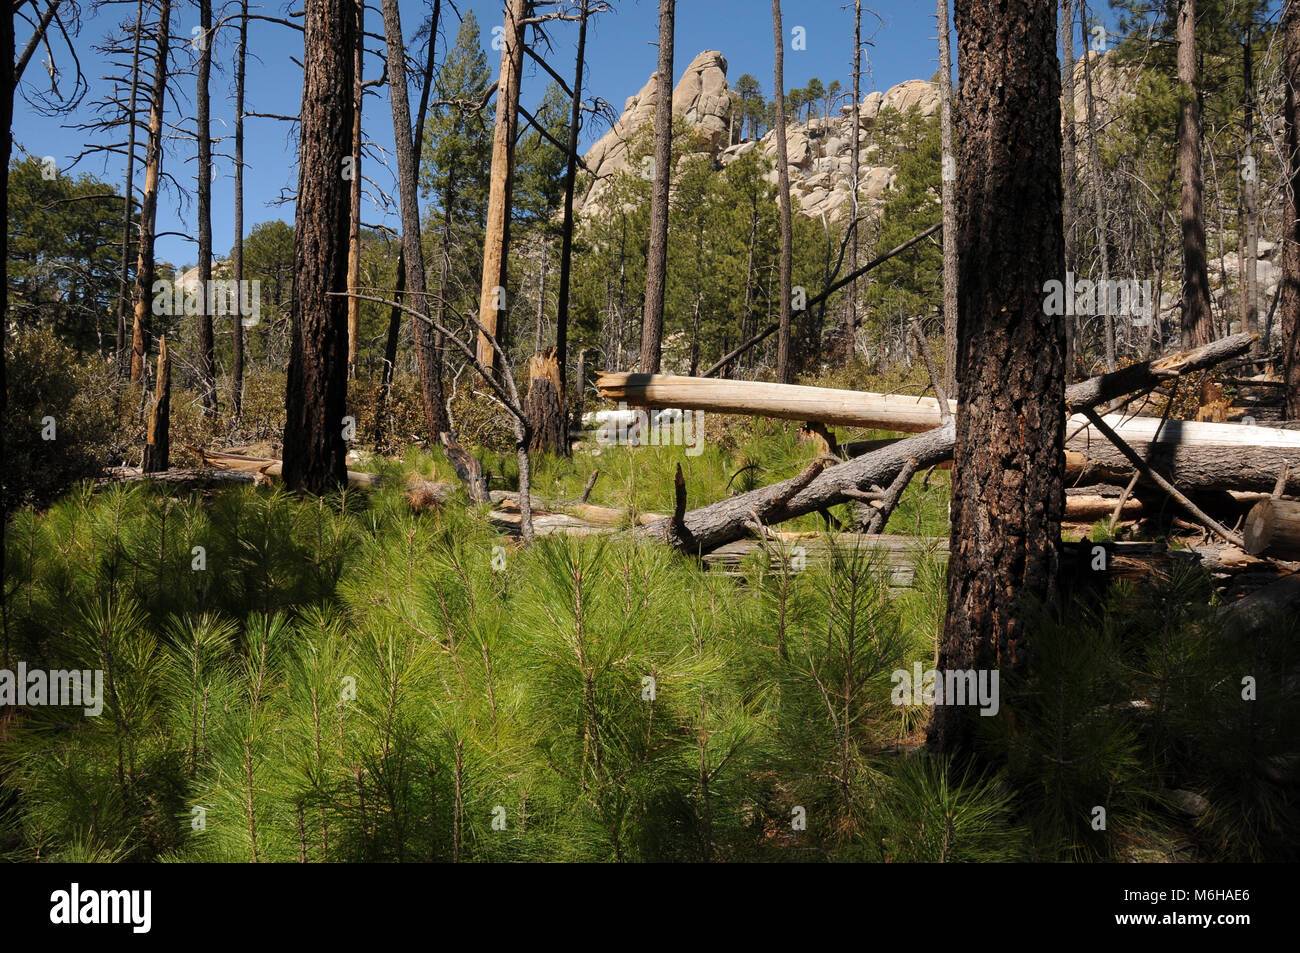 La nuova crescita di pini, felci e altre piante emerge dal suolo della foresta seguendo le Aspen Fire, Arizona Trail, deserto di Rocks Trail, Trail, Foto Stock